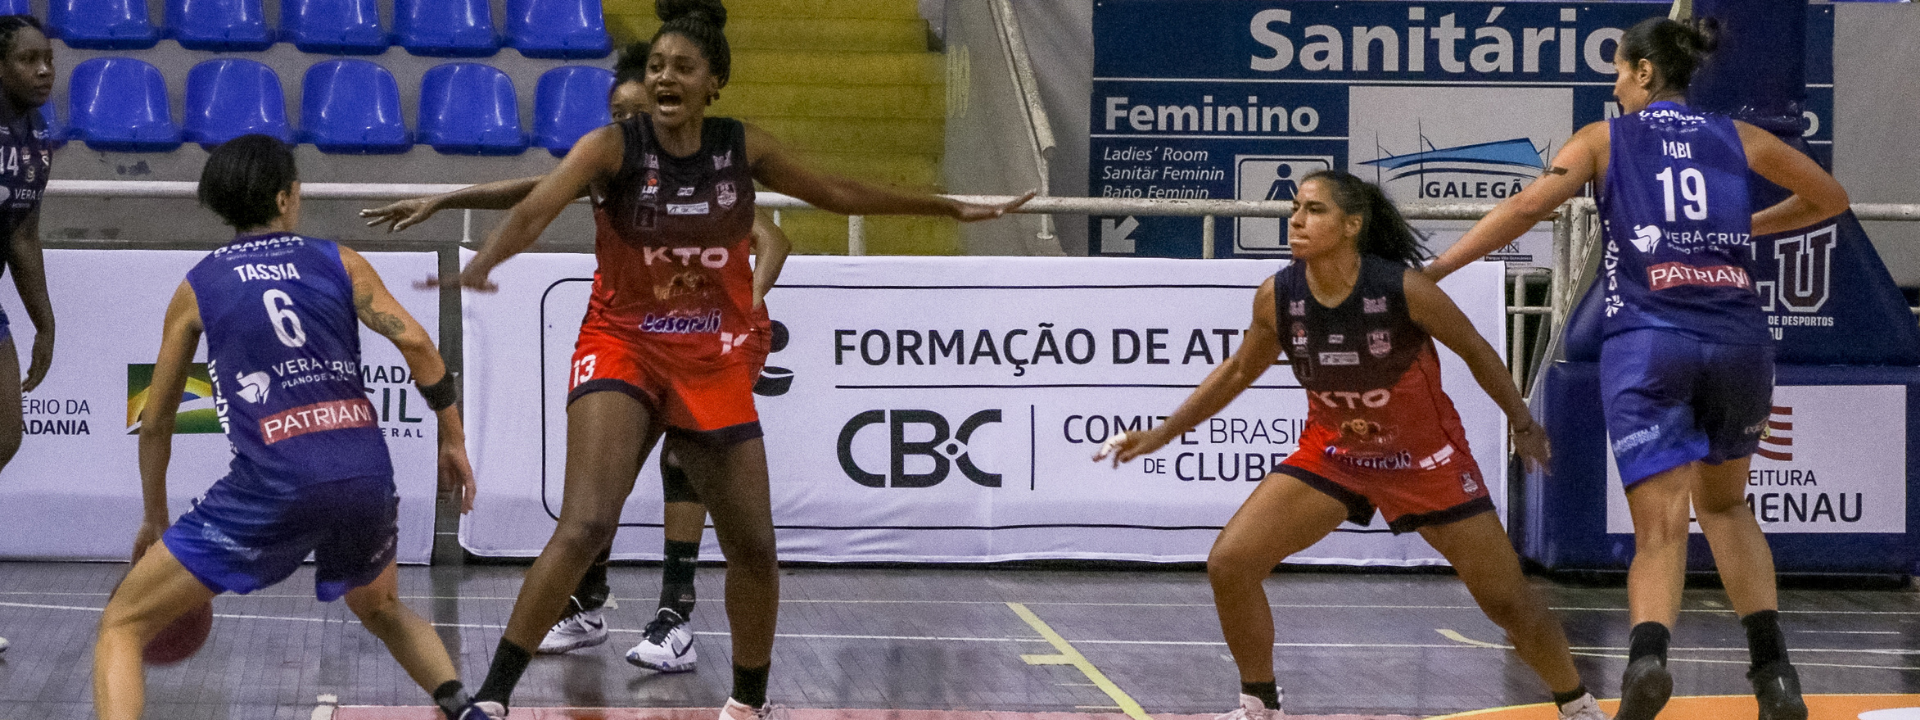 Liga de Basquete Feminino (LBF) mantém parceria com o Comitê Brasileiro de Clubes na realização do Campeonato Brasileiro de Basquete Feminino